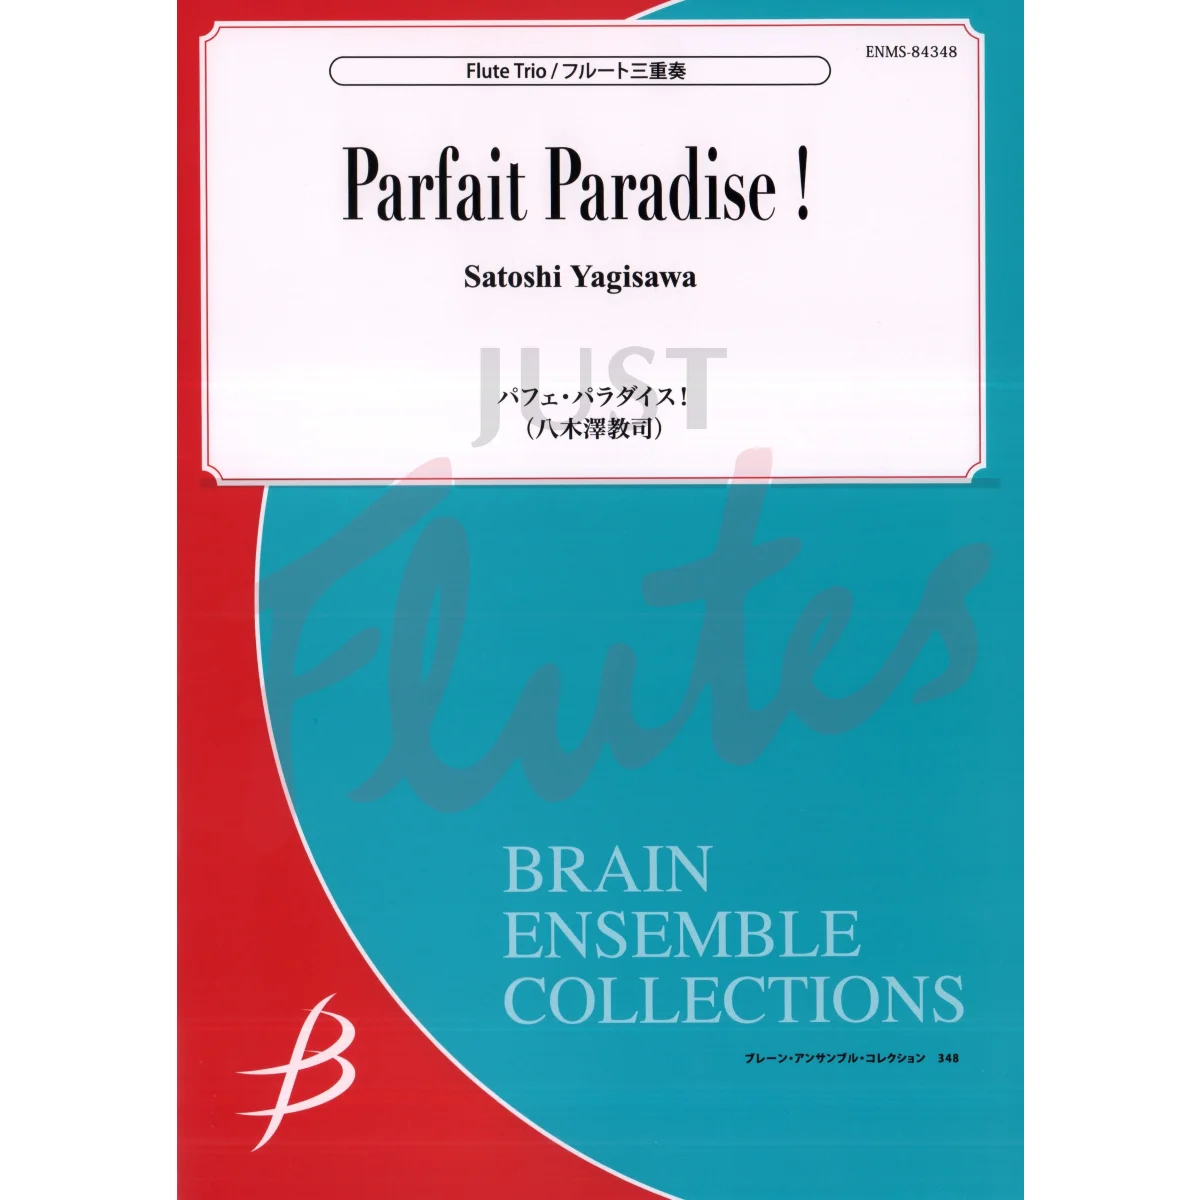 Parfait Paradise! for Flute Trio